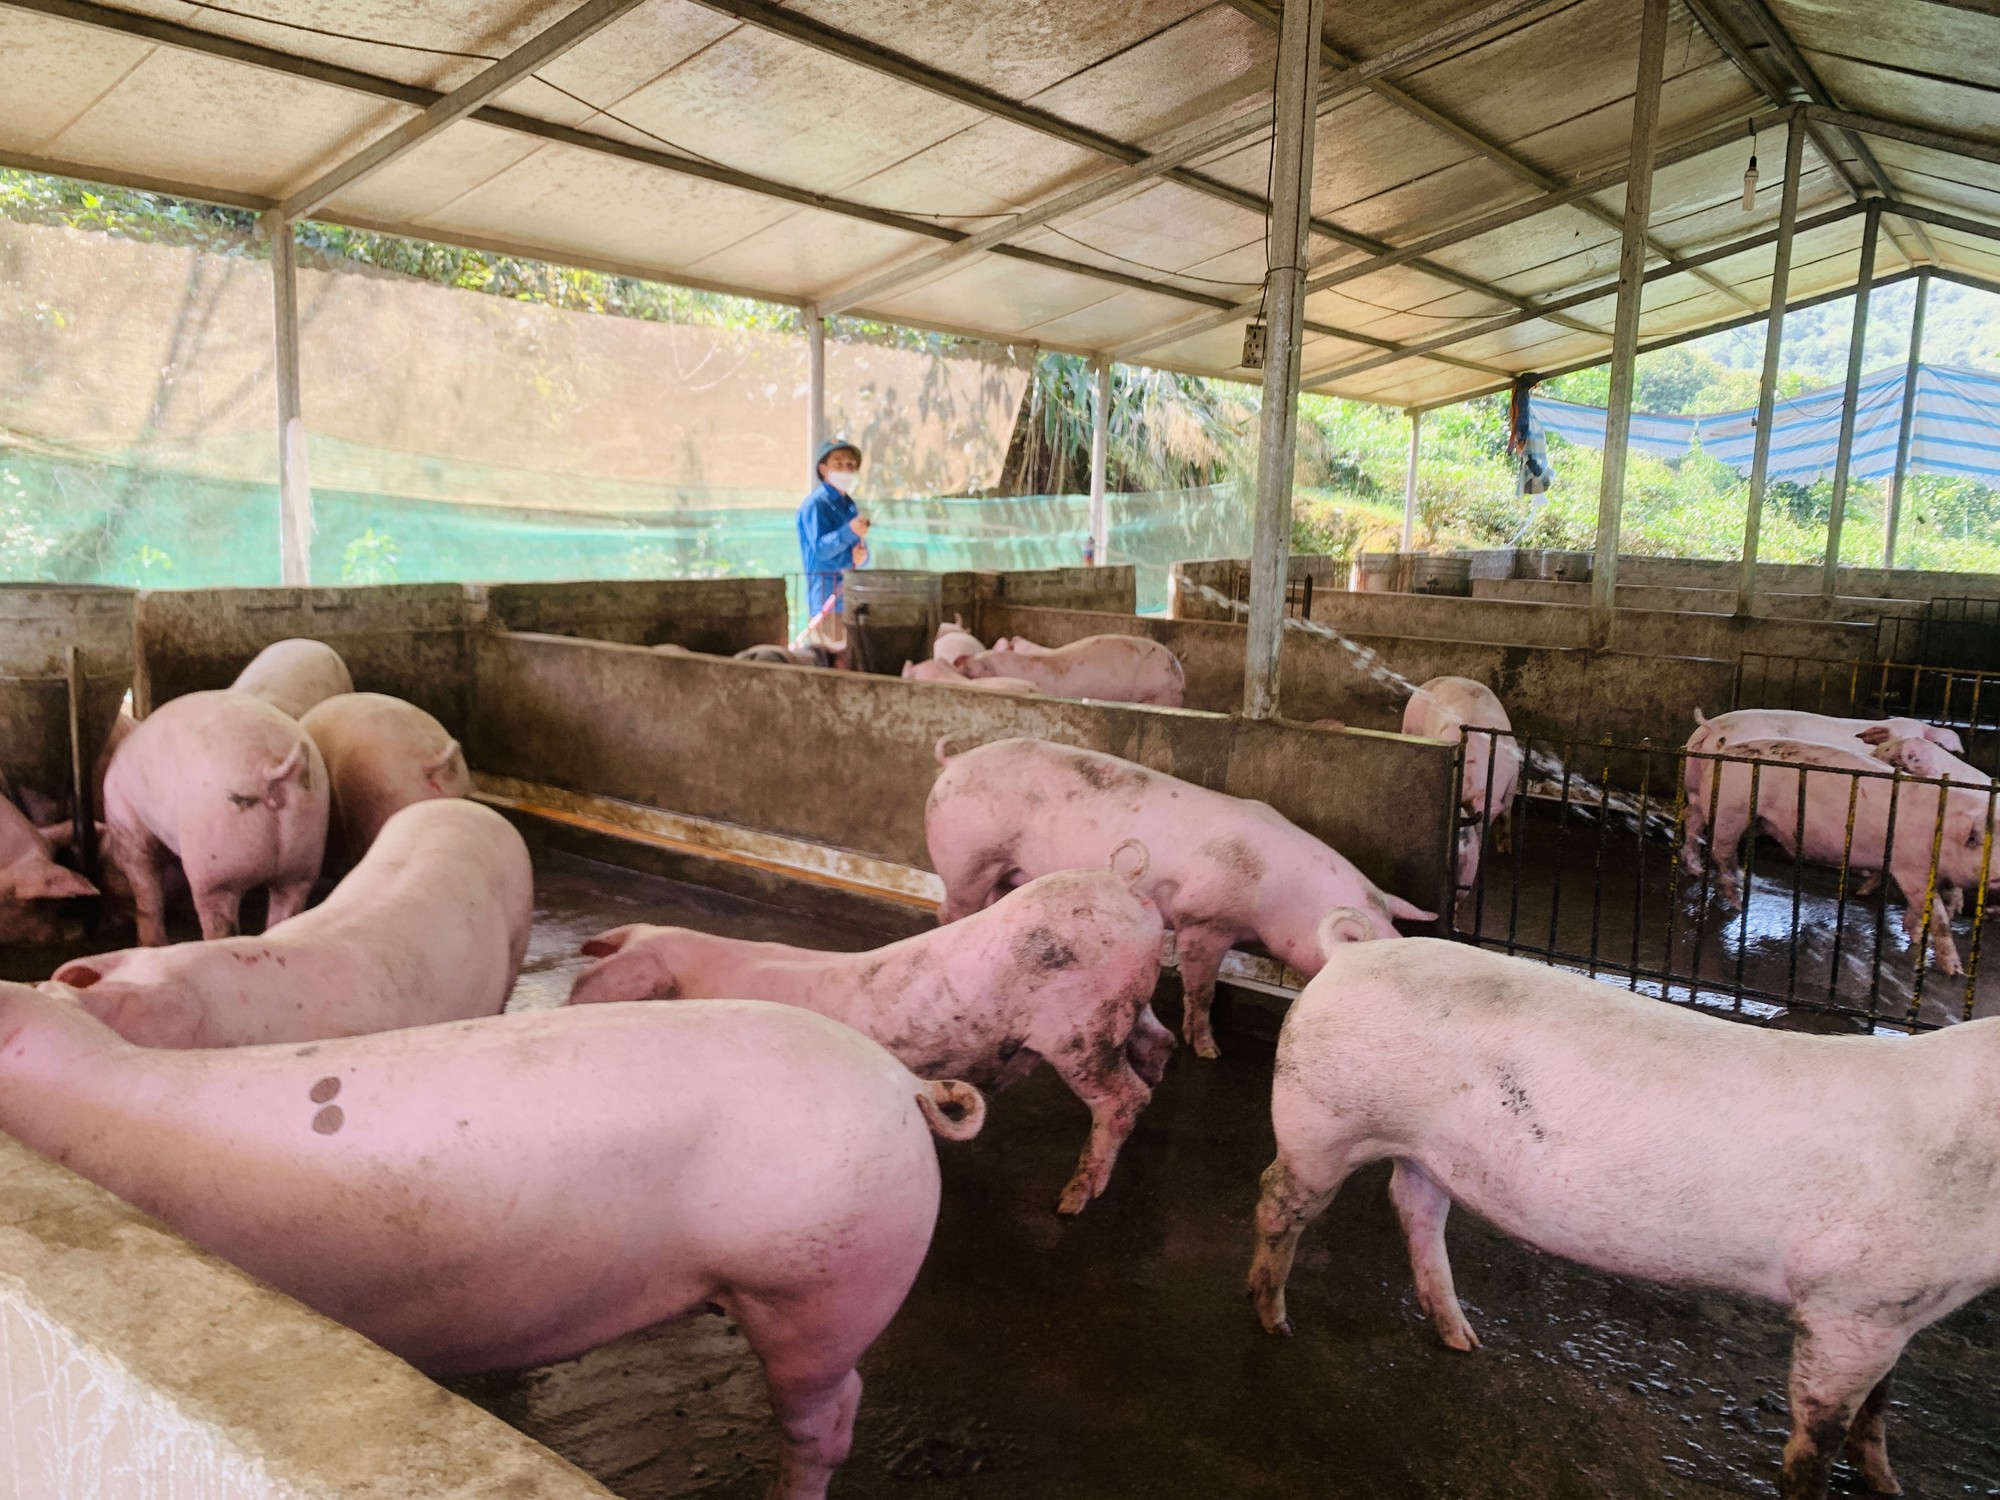 Nguyễn Thành Long bỏ phố về quê Hà Giang nuôi lợn, ban đầu làng xóm xầm xì, sau thành người truyền cảm hứng - Ảnh 1.